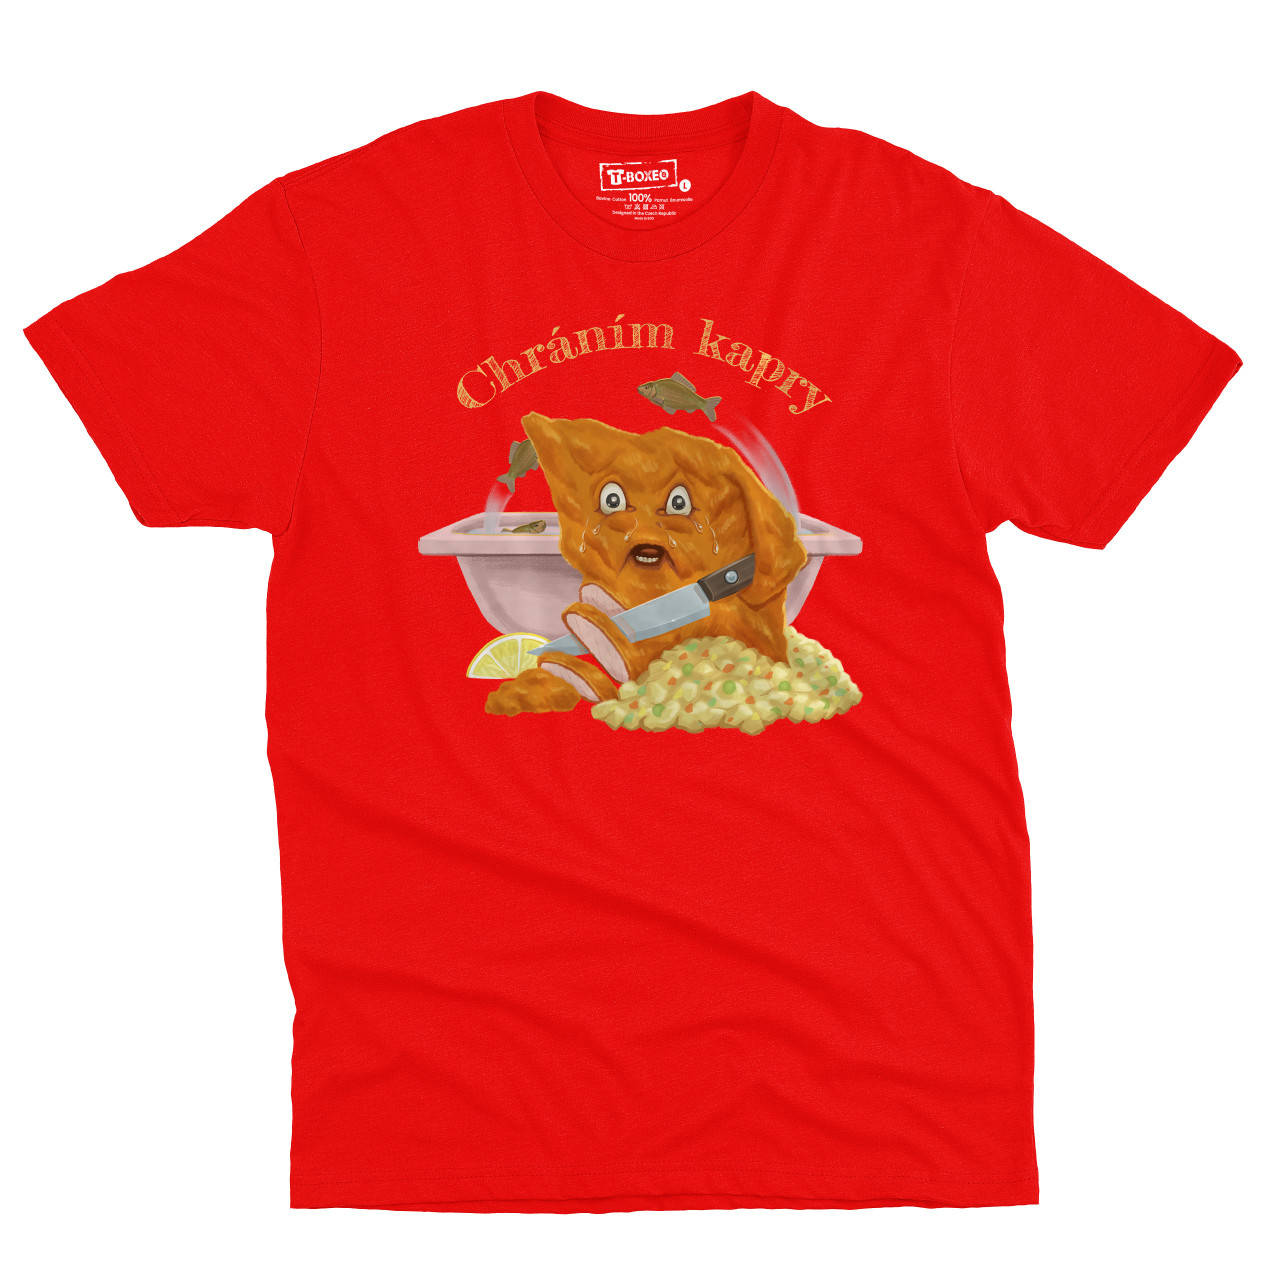 Pánské tričko s potiskem "Chráním kapry"